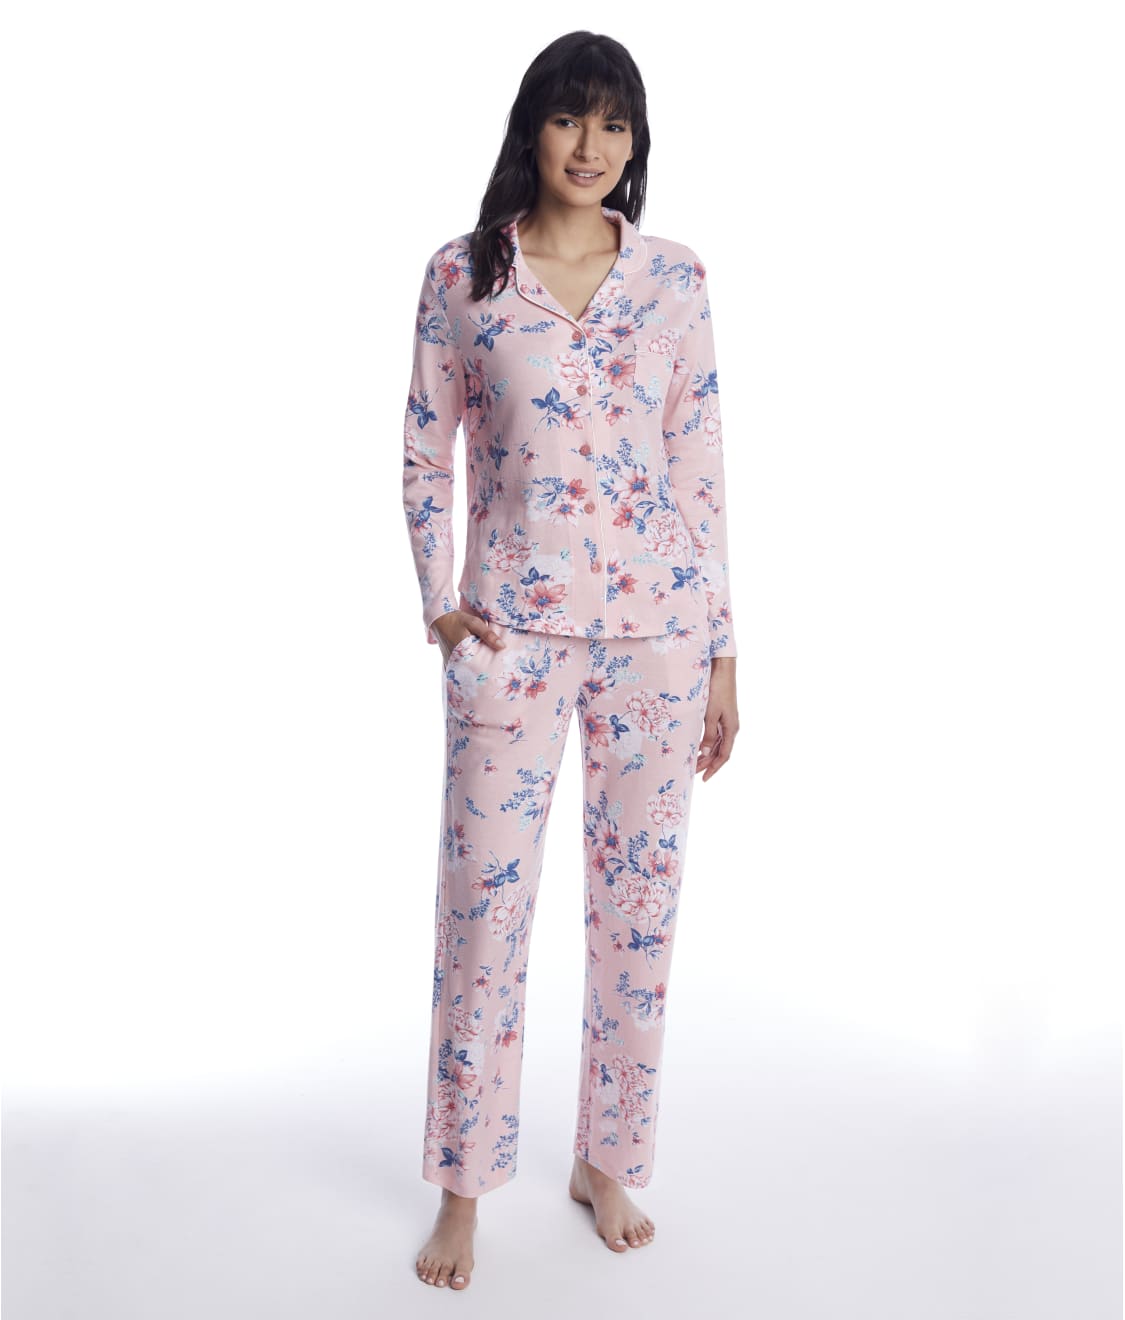 Karen Neuburger Pajamas & Sleepwear